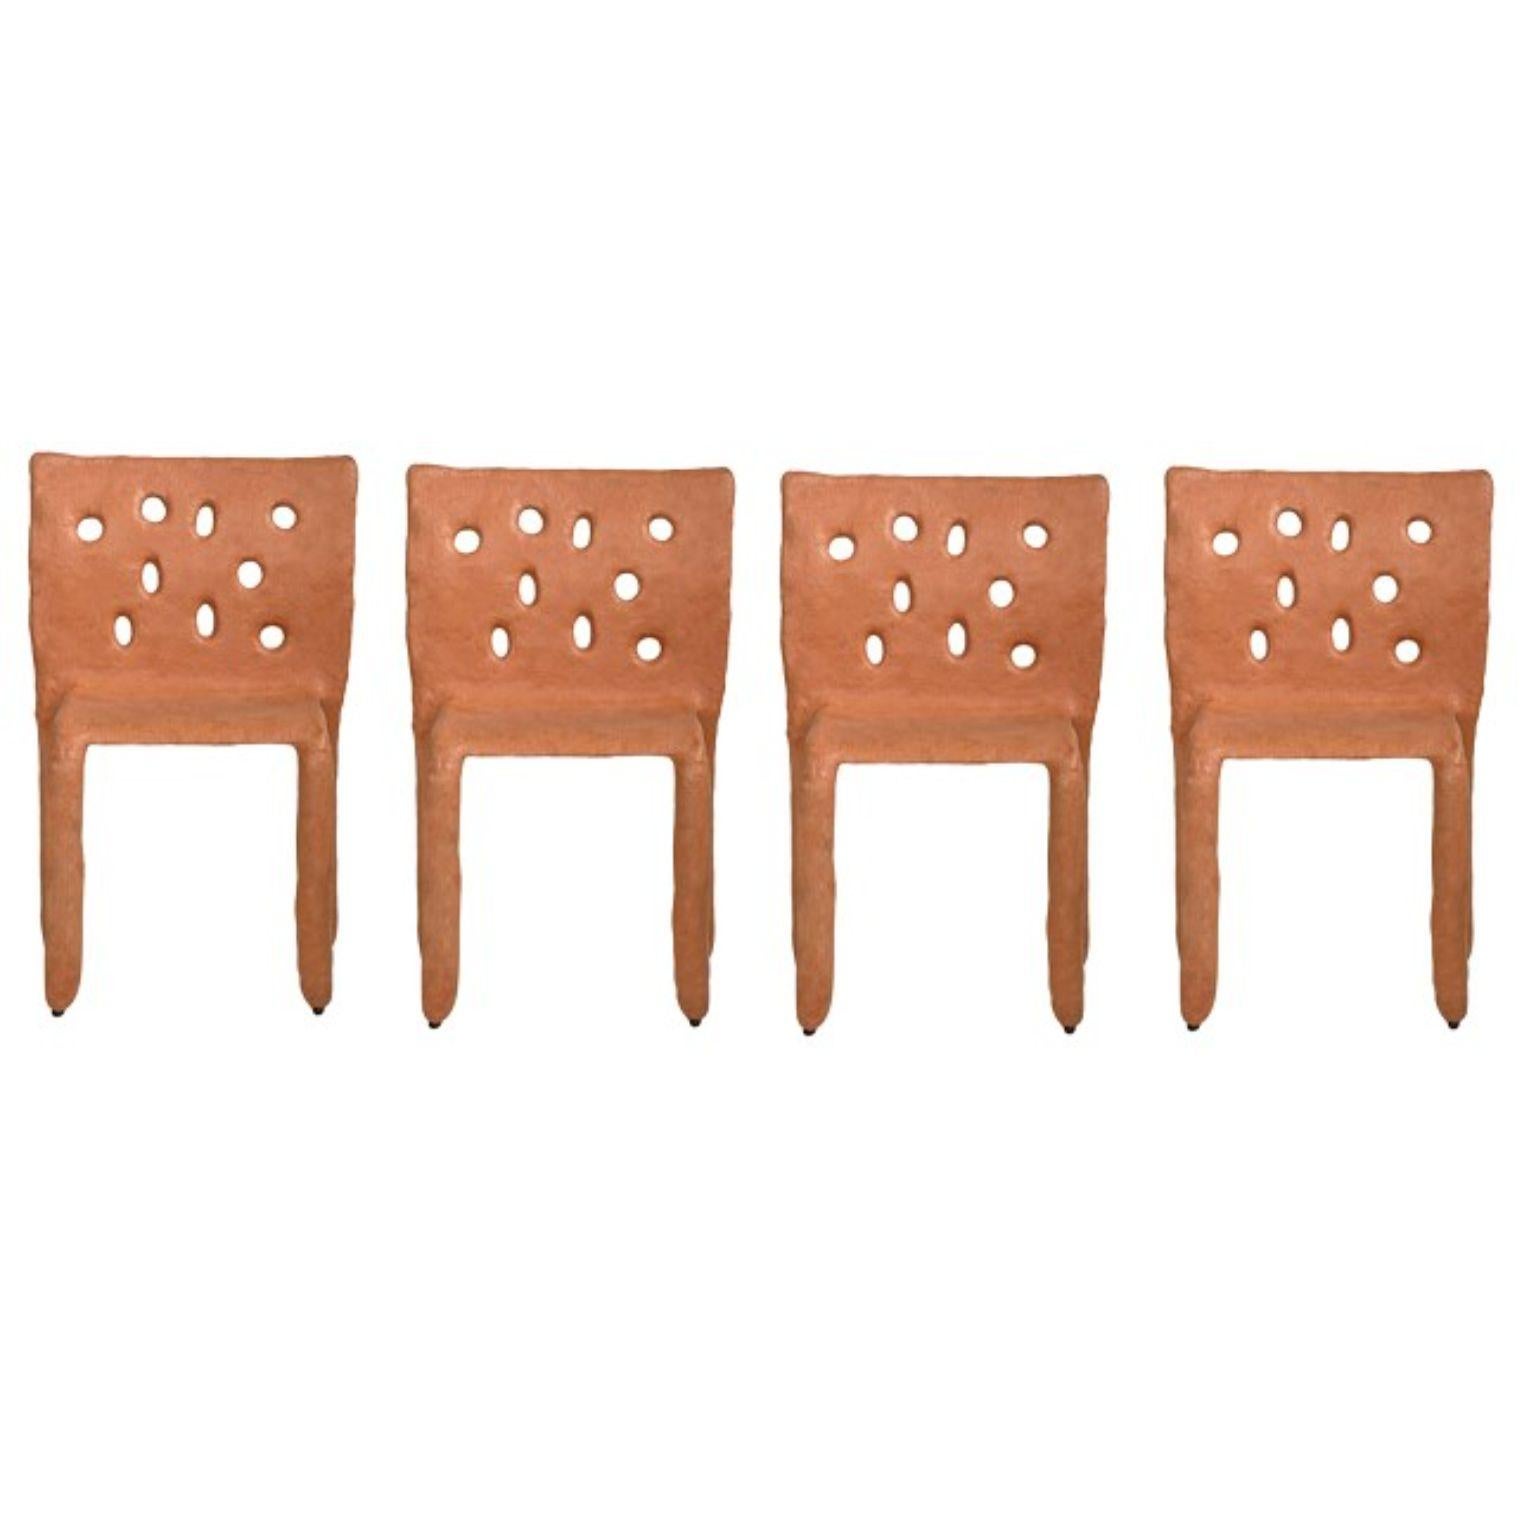 Ensemble de 4 chaises contemporaines sculptées en orange par Faina
Design : Victoriya Yakusha
MATERIAL : acier, caoutchouc de lin, biopolymère, cellulose.
Dimensions : hauteur 82 x largeur 54 x profondeur des pieds 45 cm
Poids : 15 kilos.

Finition